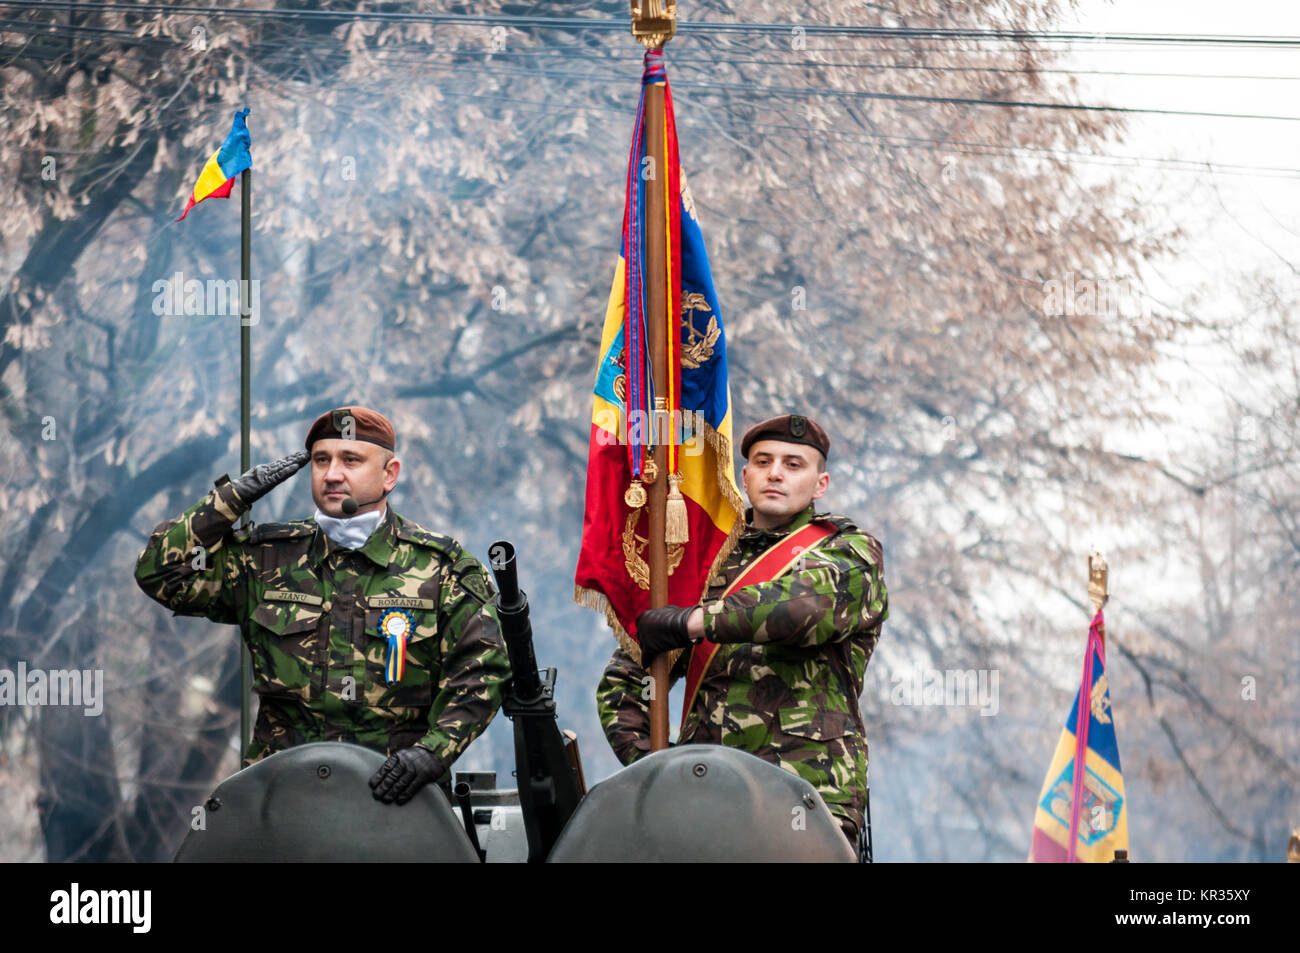 TIMISOARA, Rumänien - Dezember 1, 2017: Zwei Soldaten der militärischen Gruß am National Day Parade in Rumänien. Militärische armored Personal Carri Stockfoto